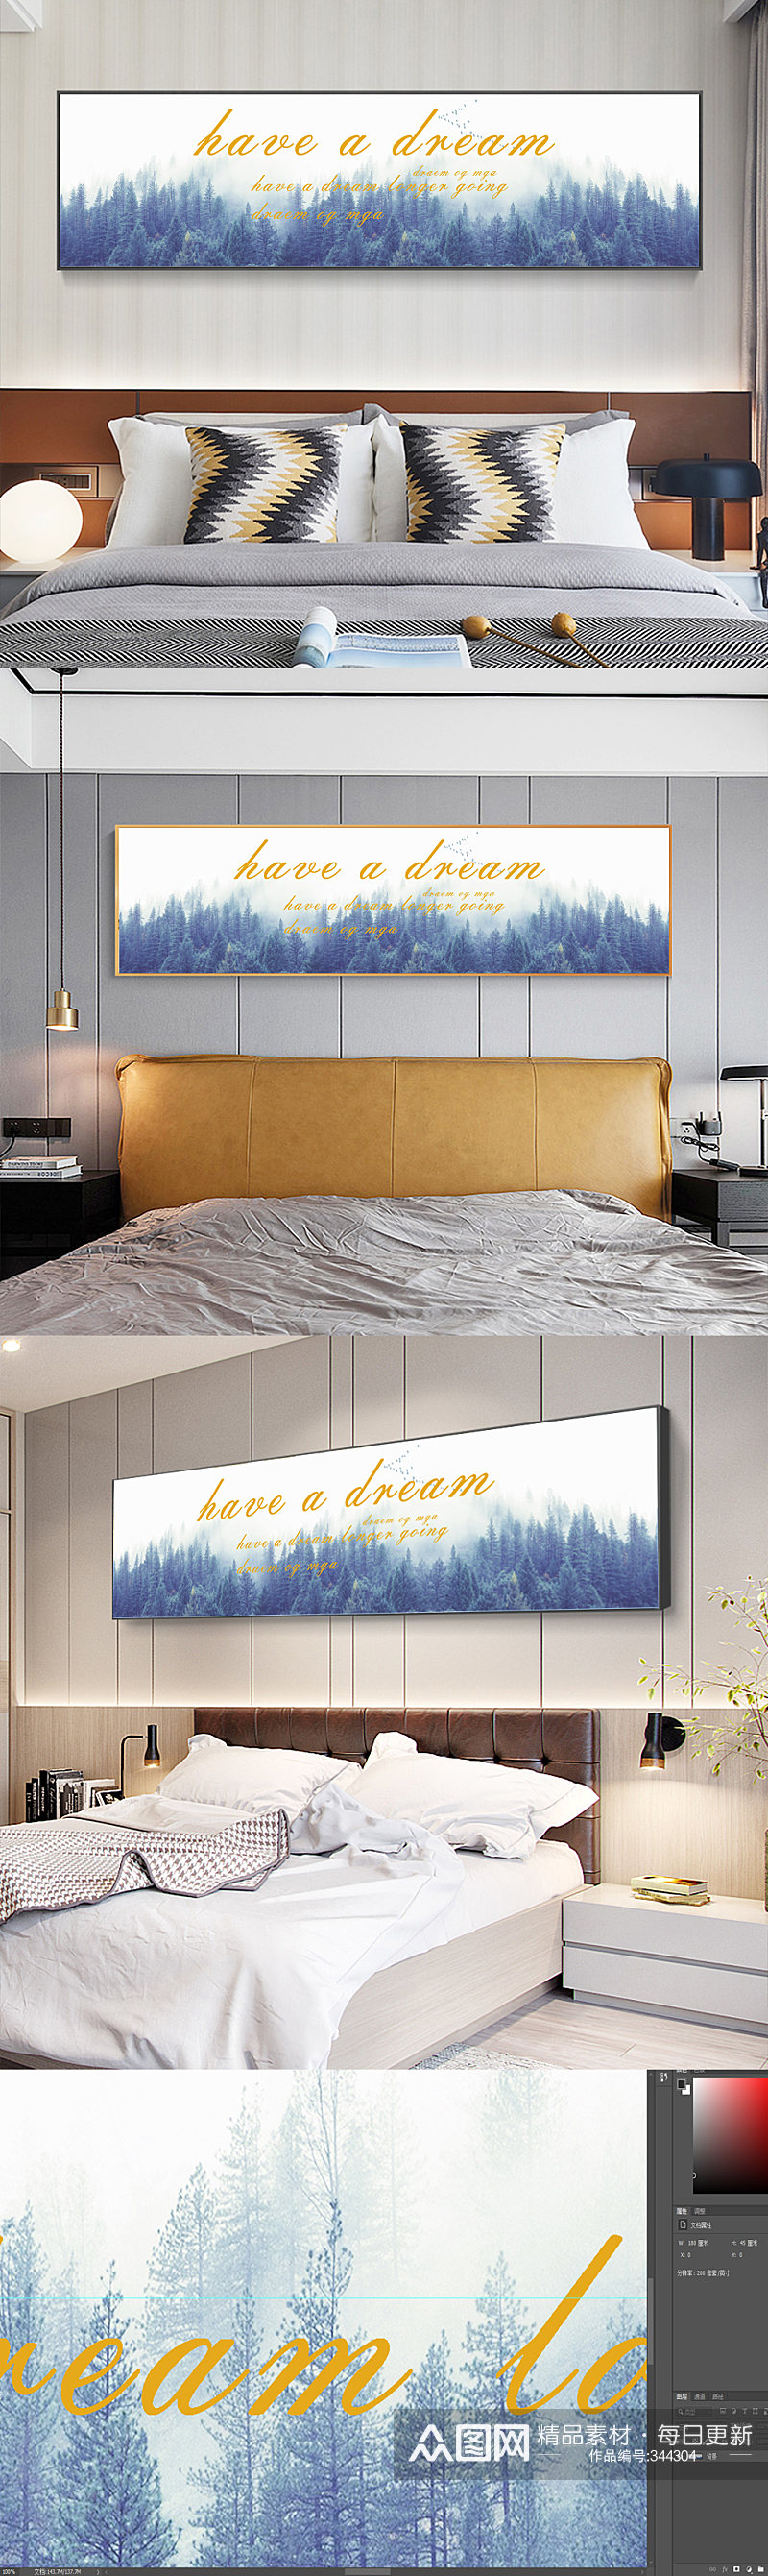 北欧森林卧室床头装饰画素材